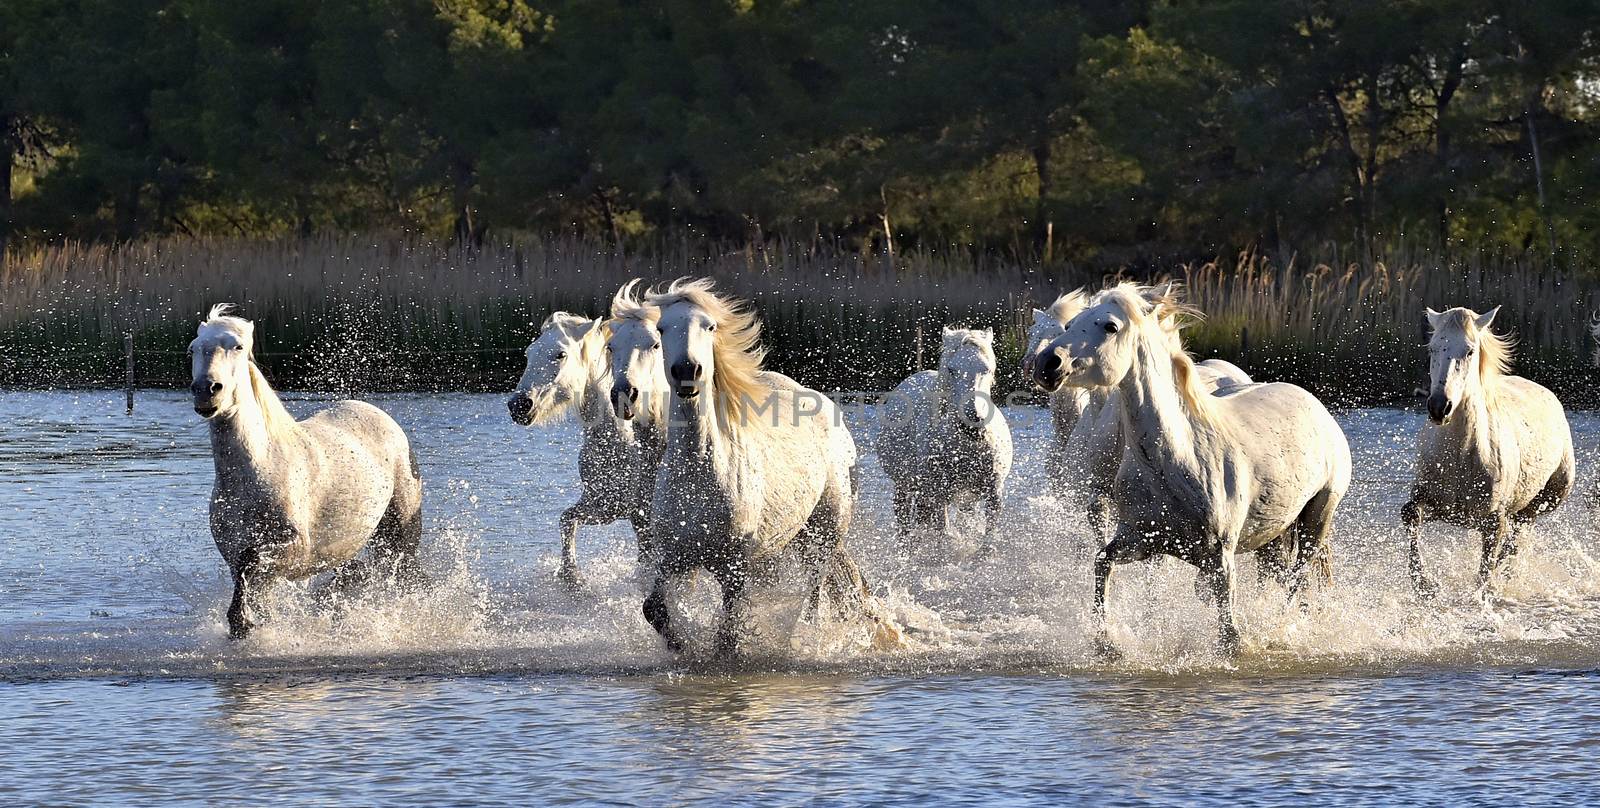 Herd of White Horses Running and splashing through water by SURZ